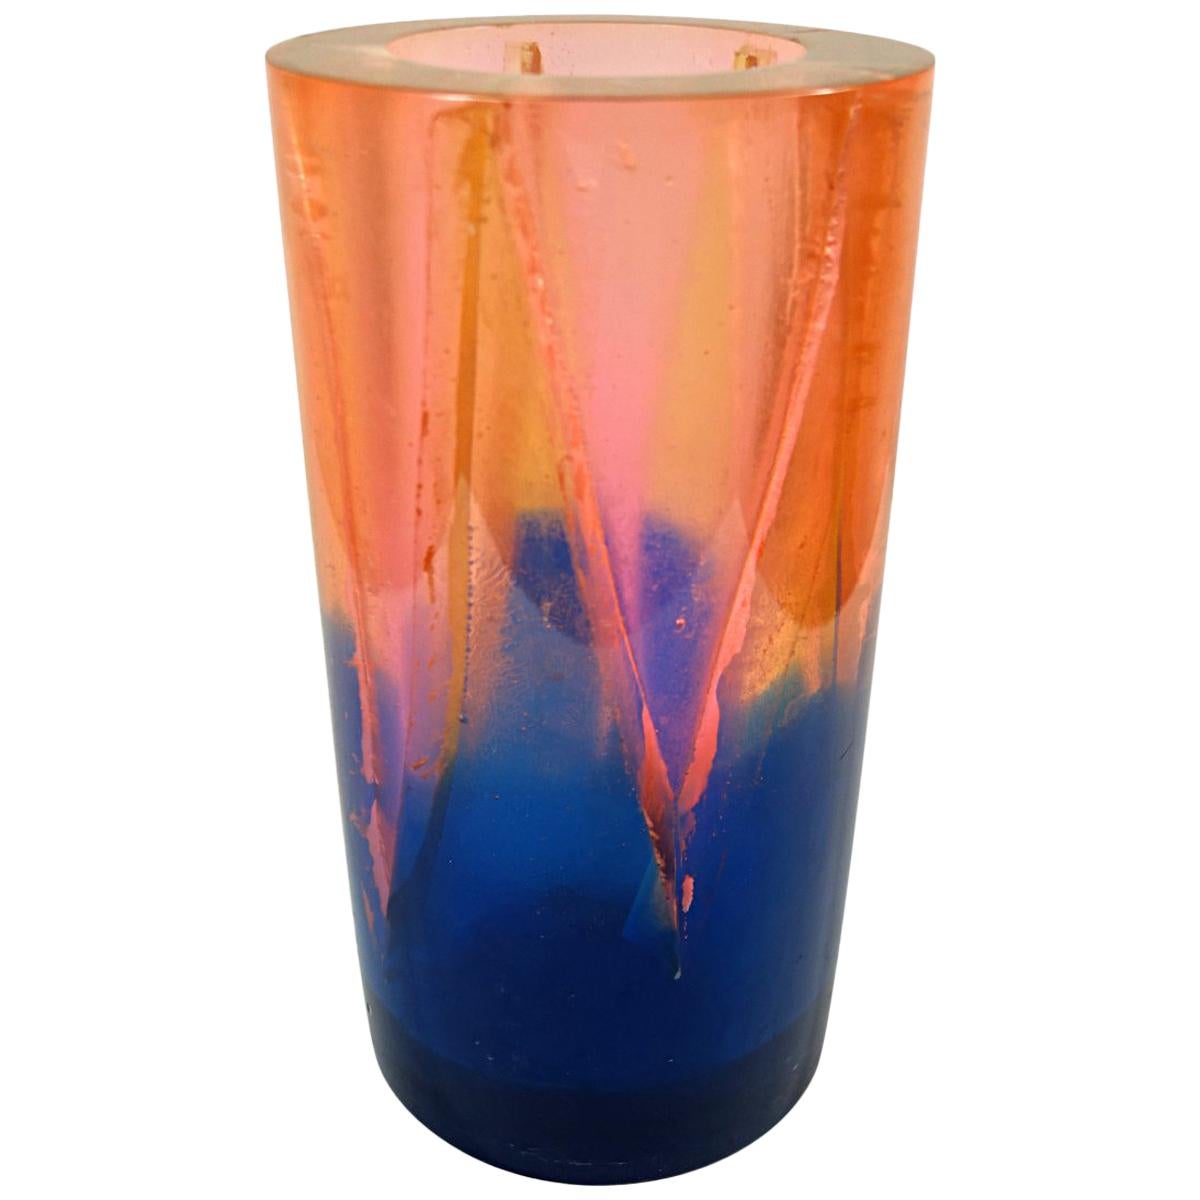 Vase aus orange-blauem Harz im postmodernen Memphis-Stil von Steve Zoller